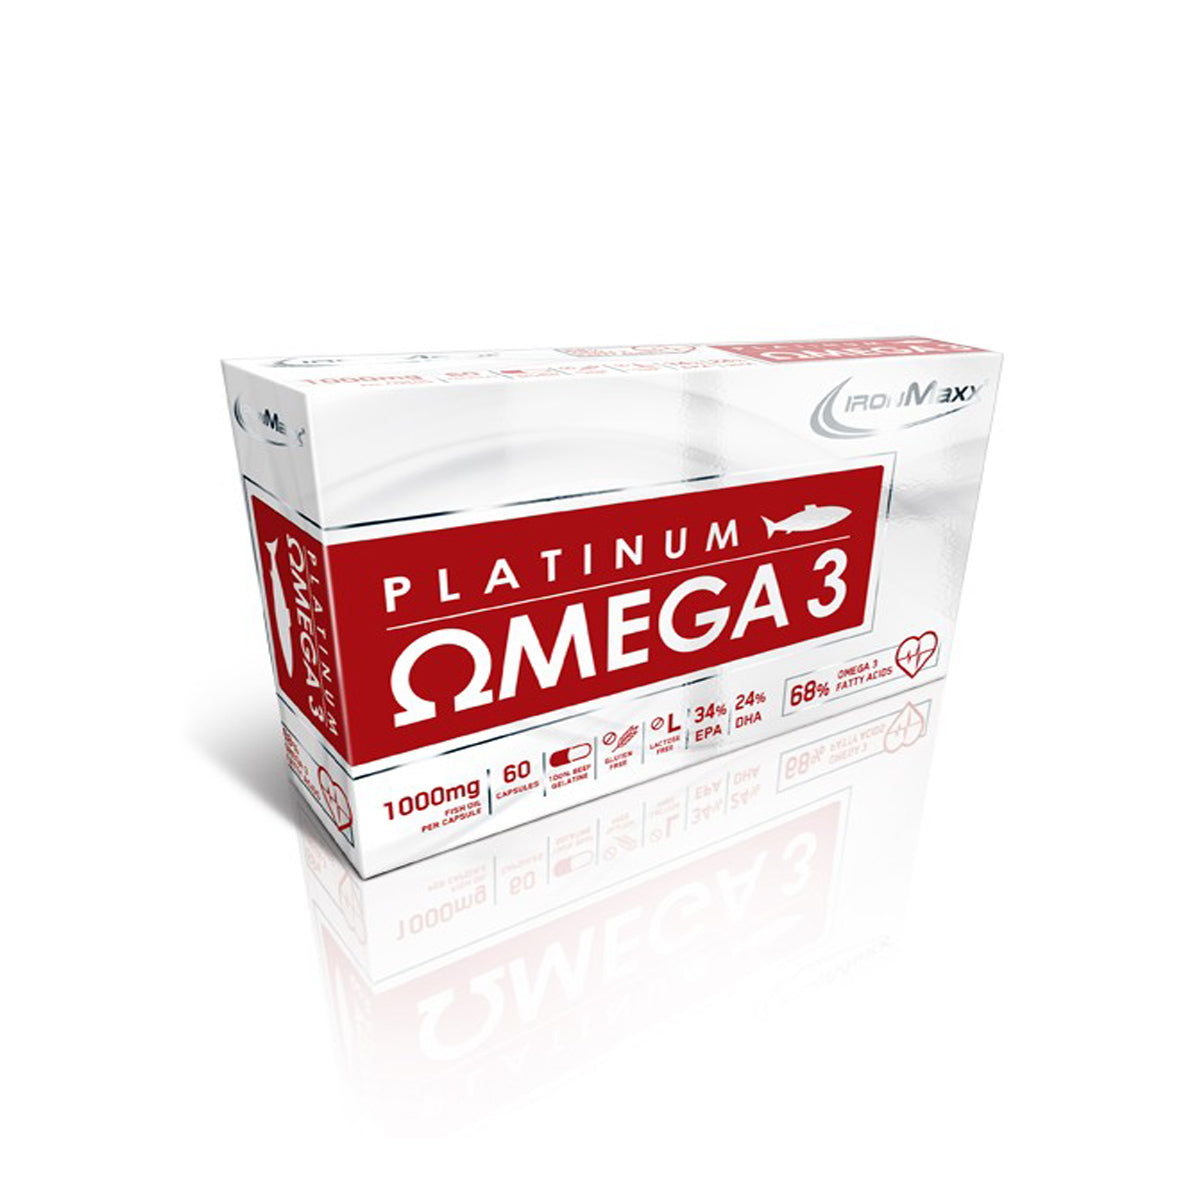 IronMaxx Platinum Omega 3 - 60 Kapseln